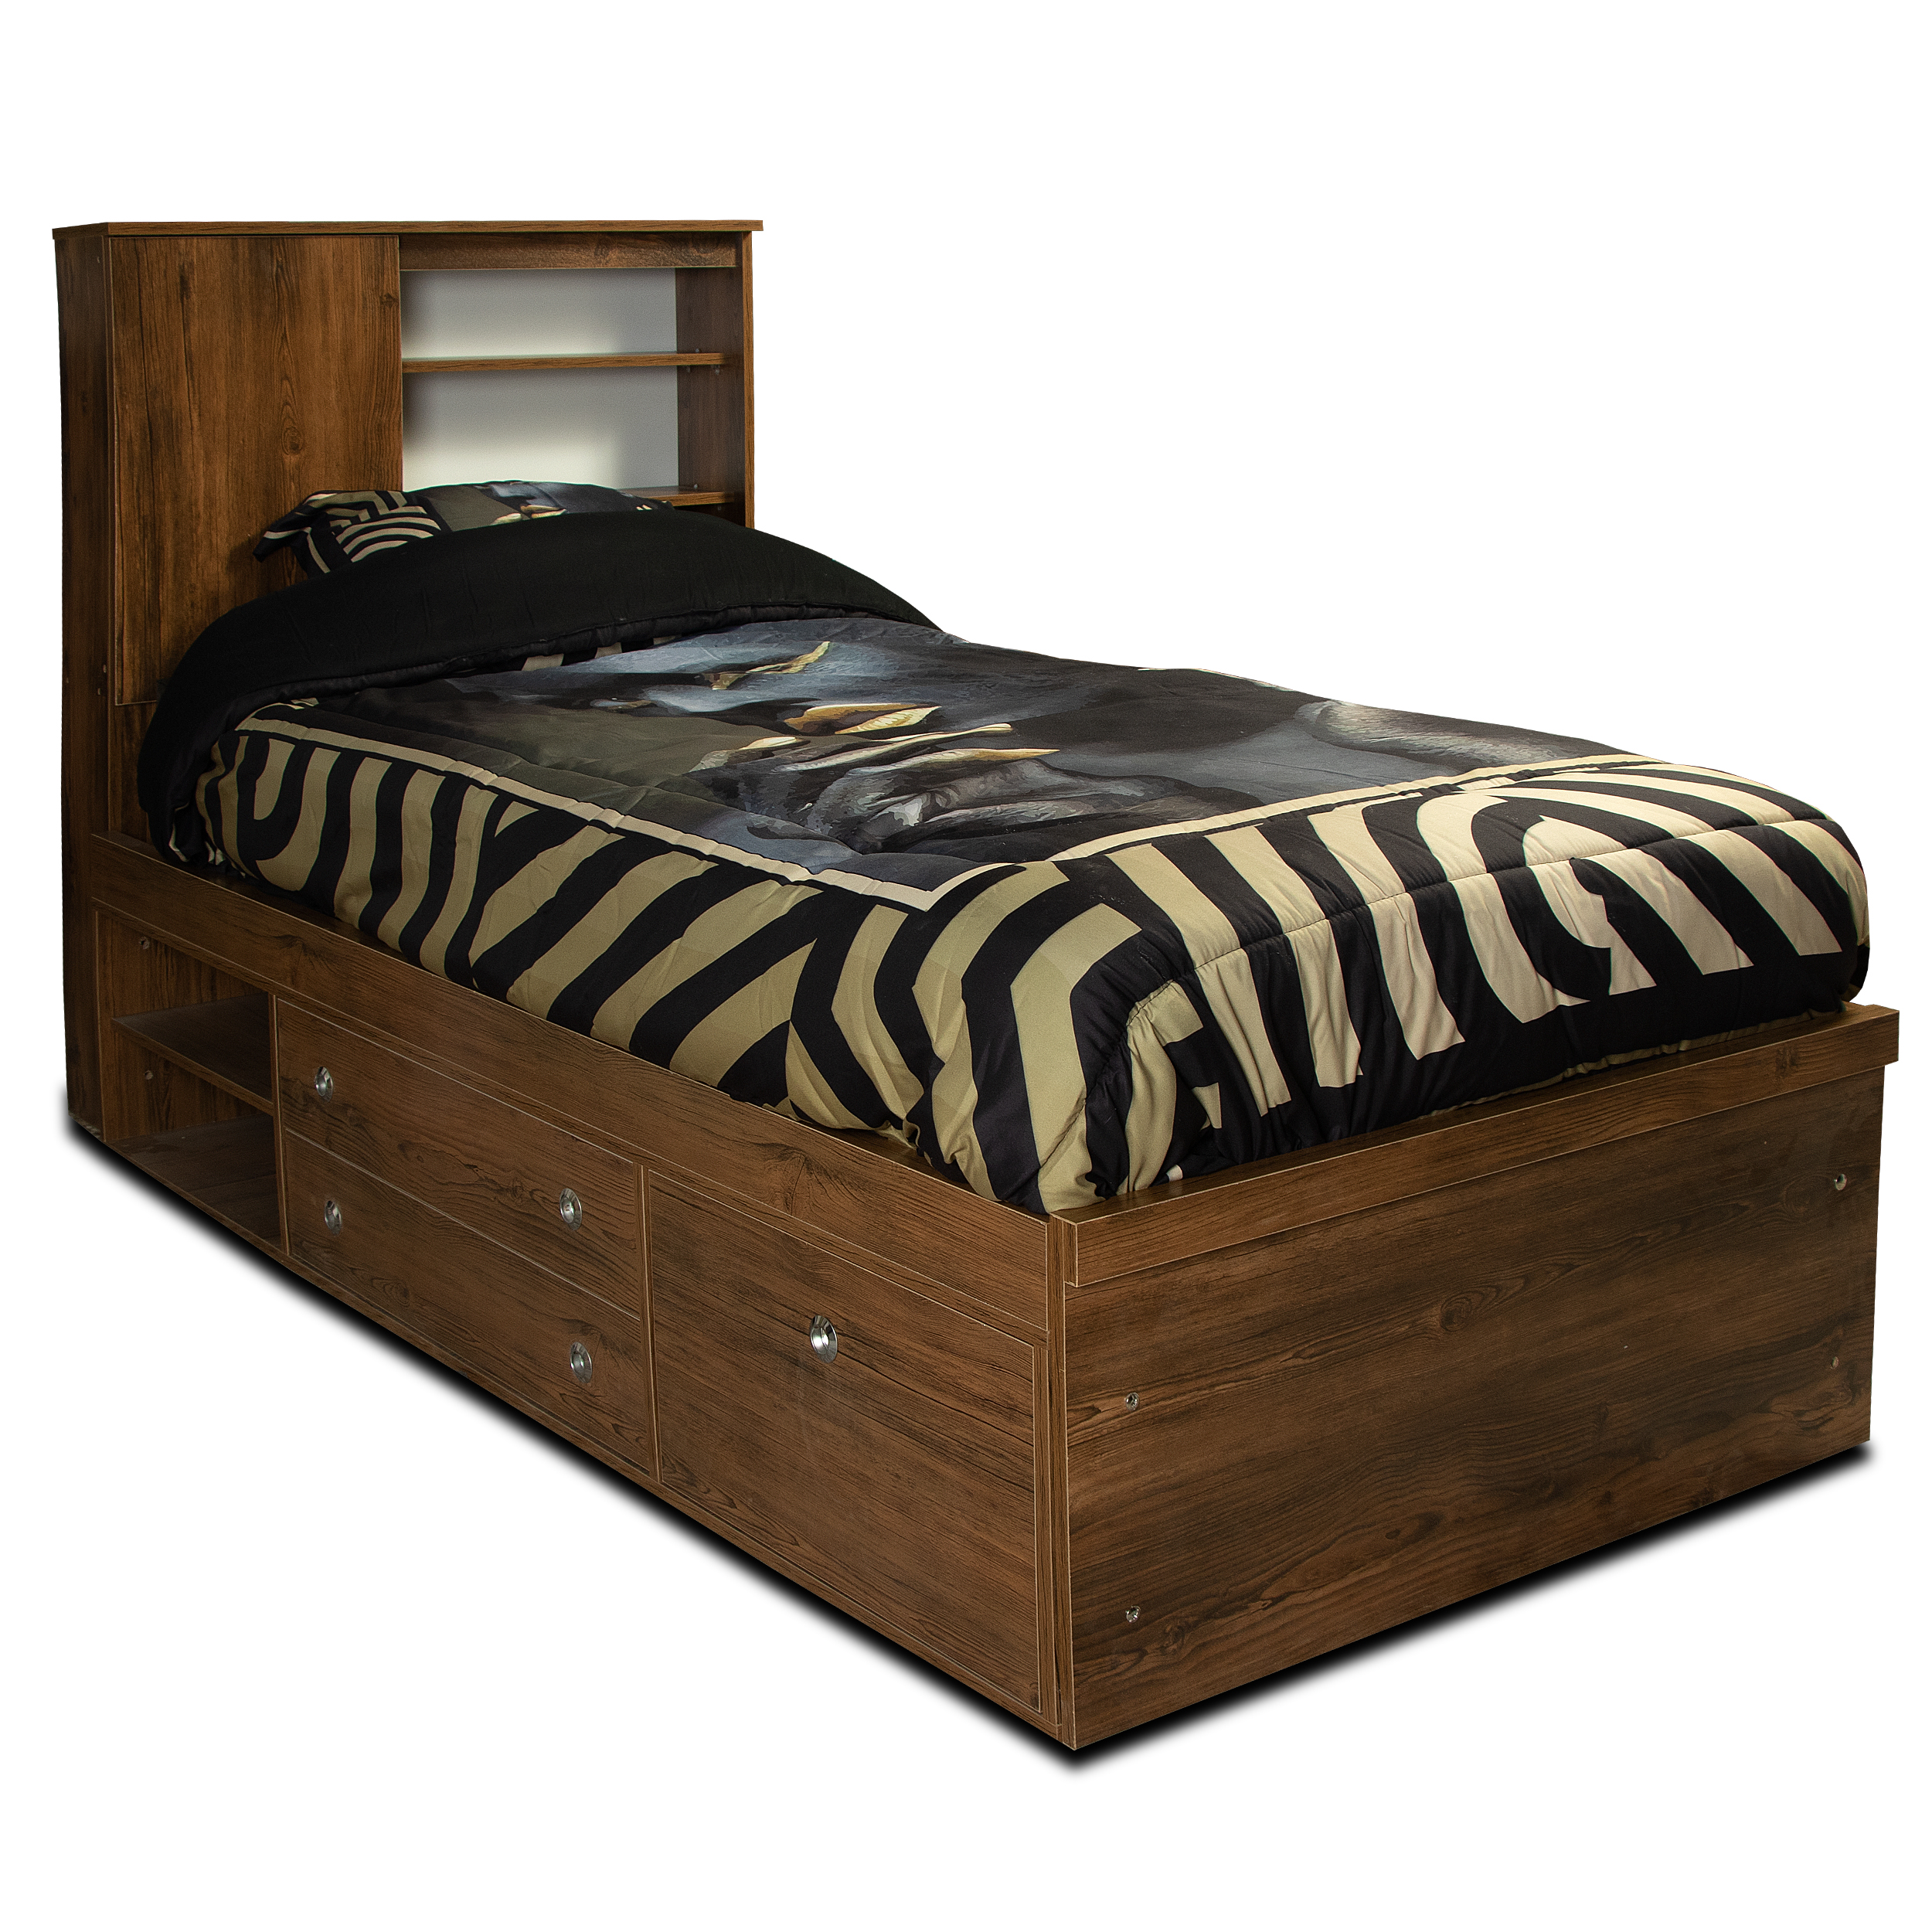 تخت خواب یک نفره مدل ویونا سایز 90×200 سانتی متر